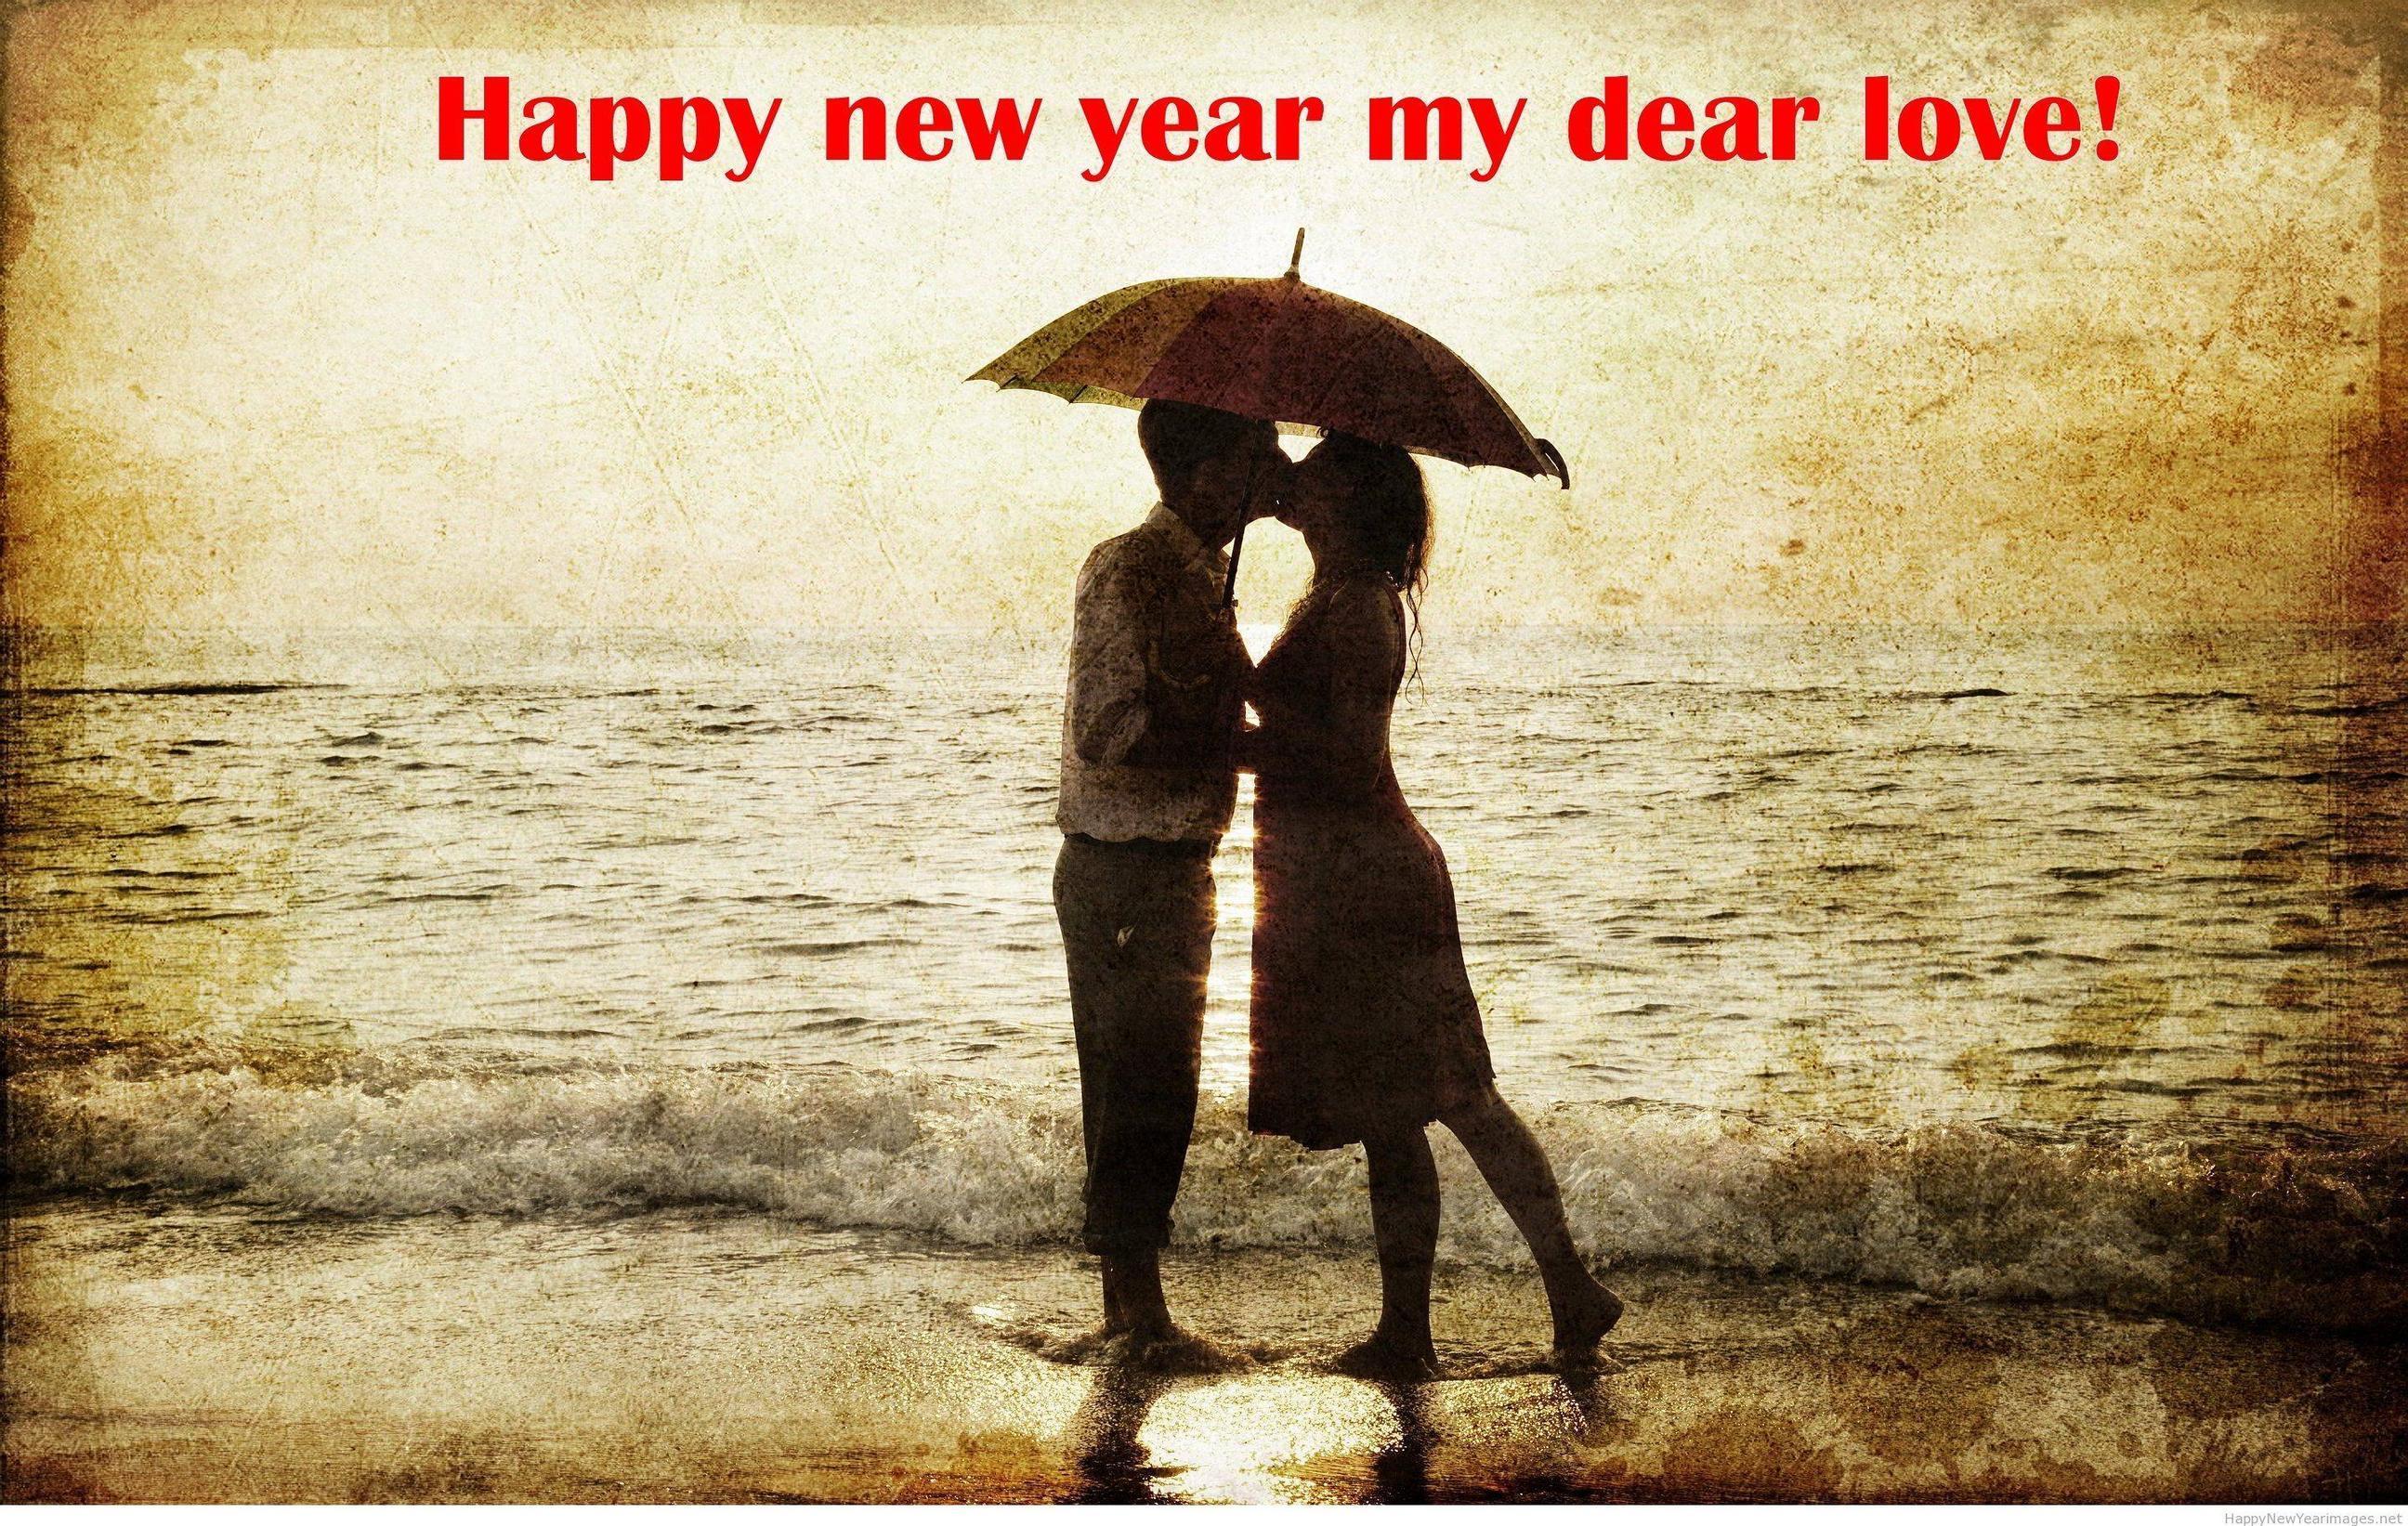 Kiss couple Happy new year wish 2015